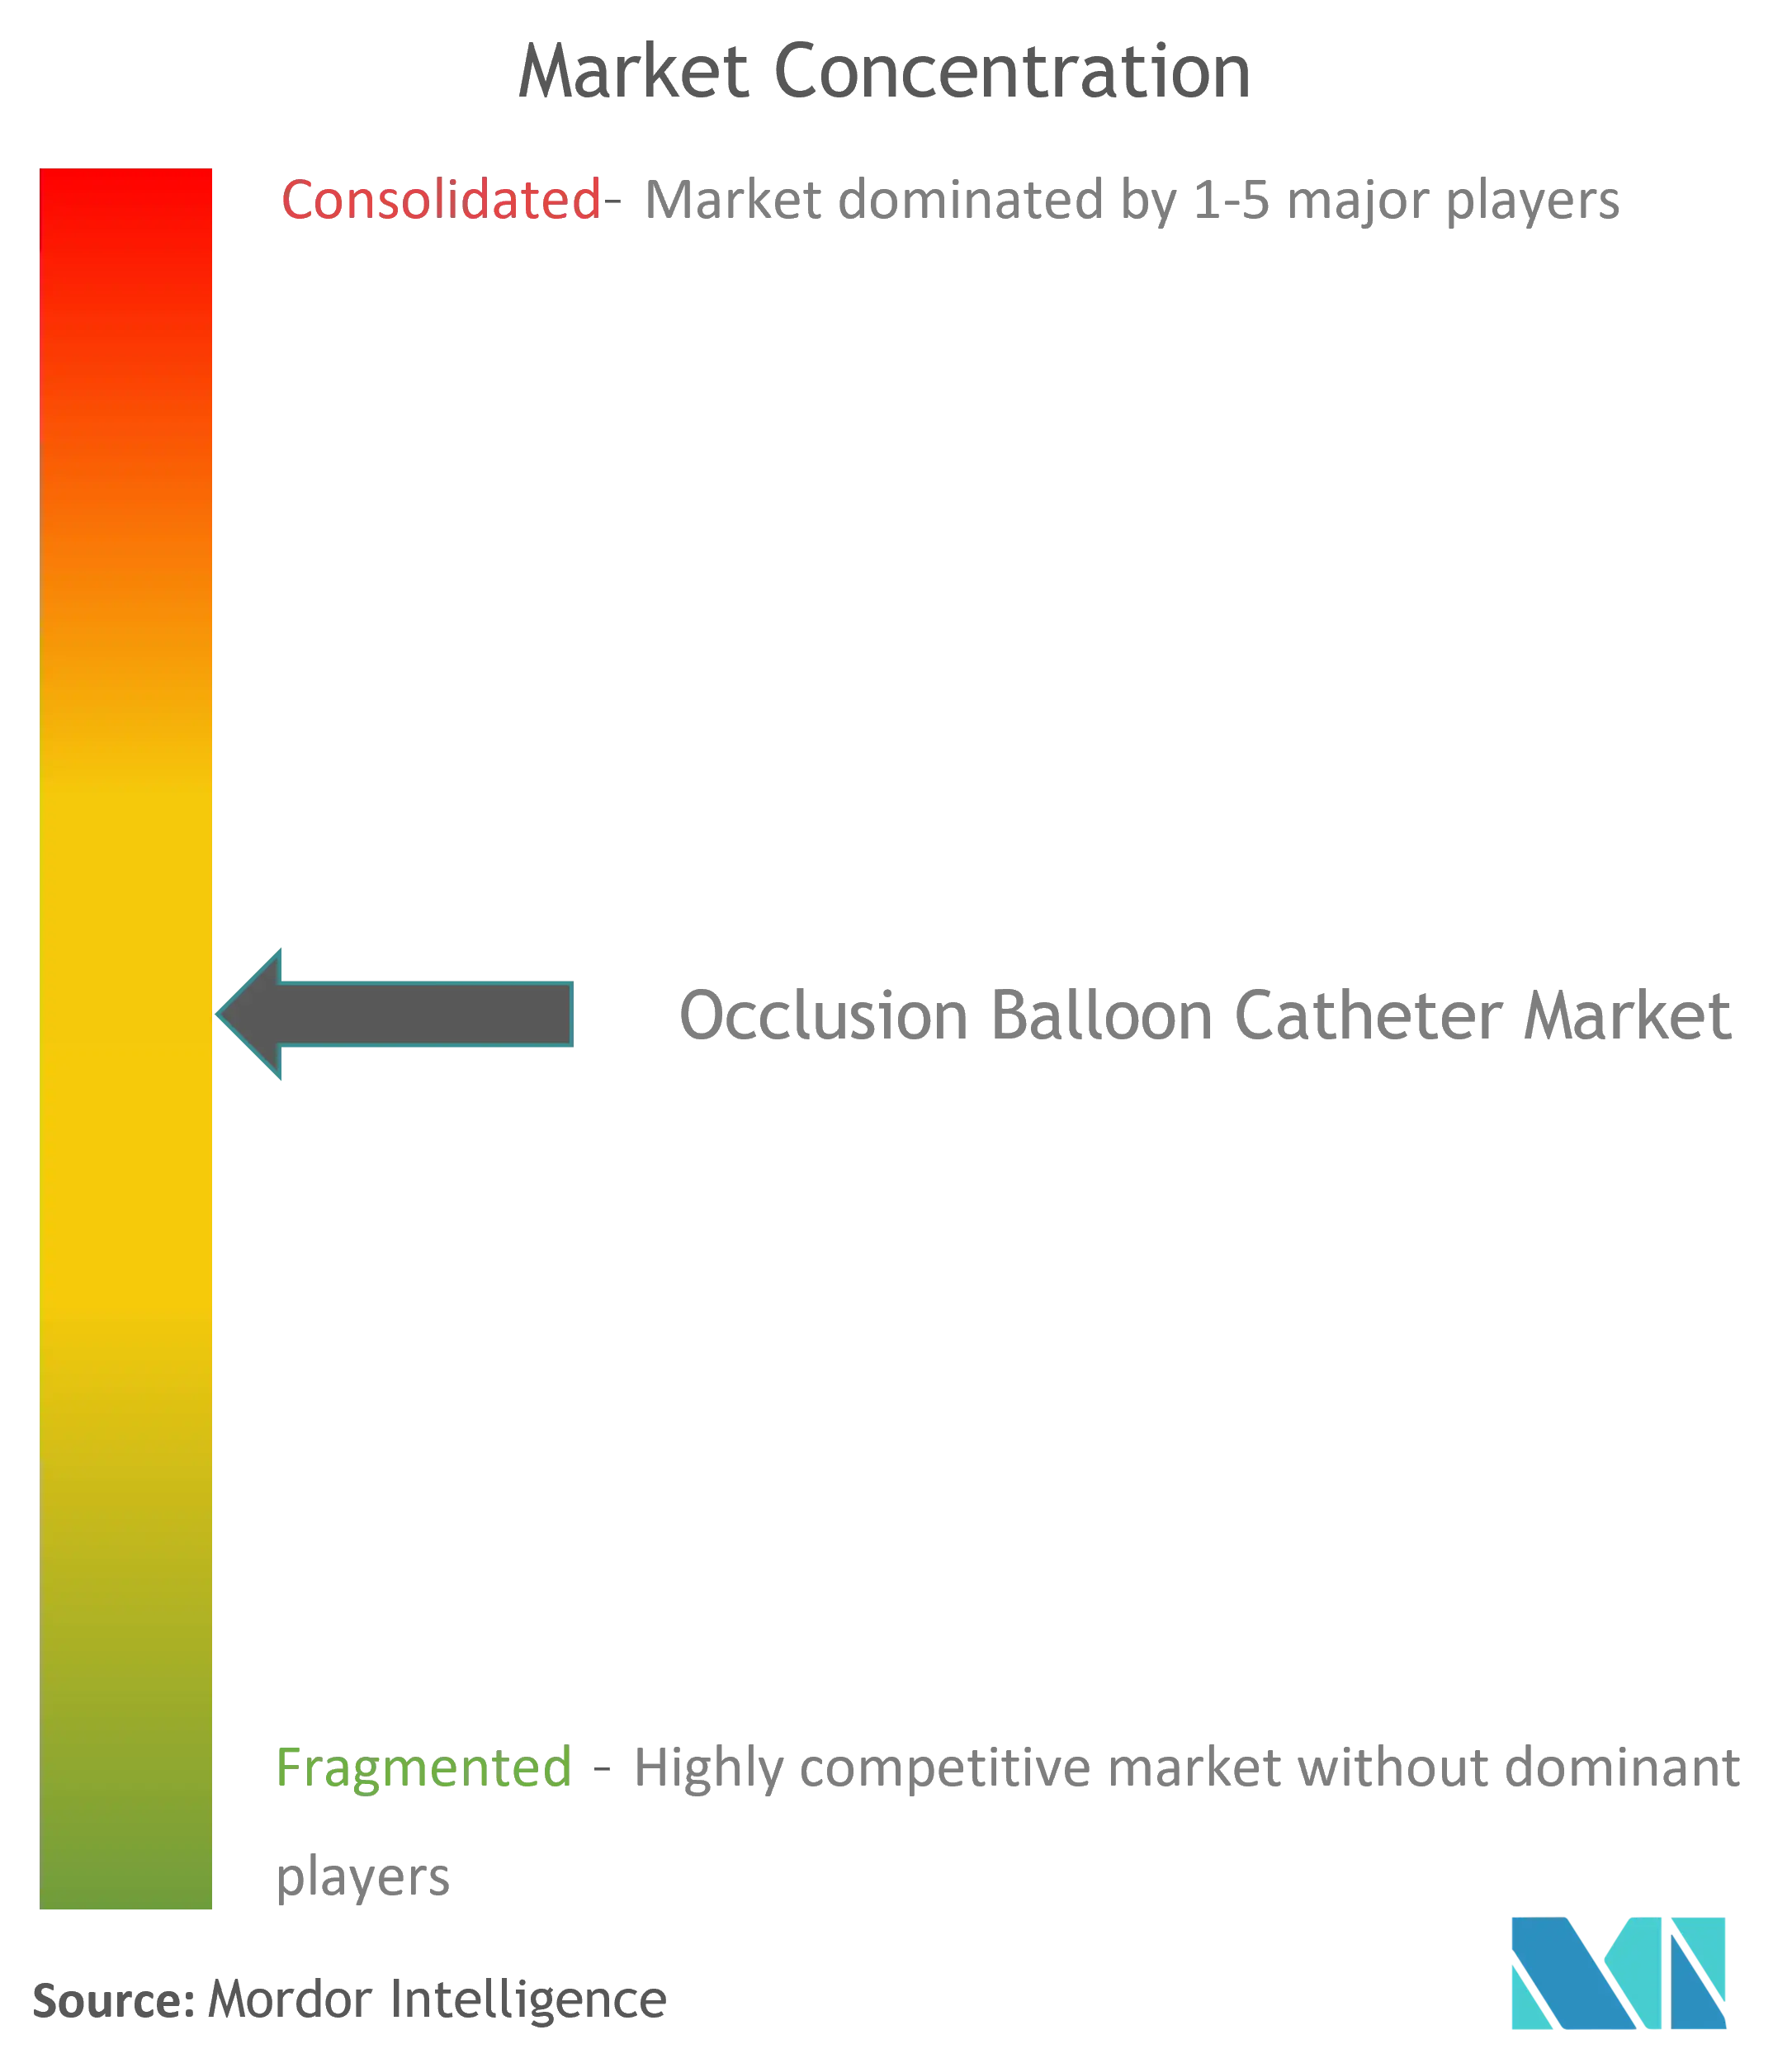 Concentration du marché des cathéters à ballonnet docclusion